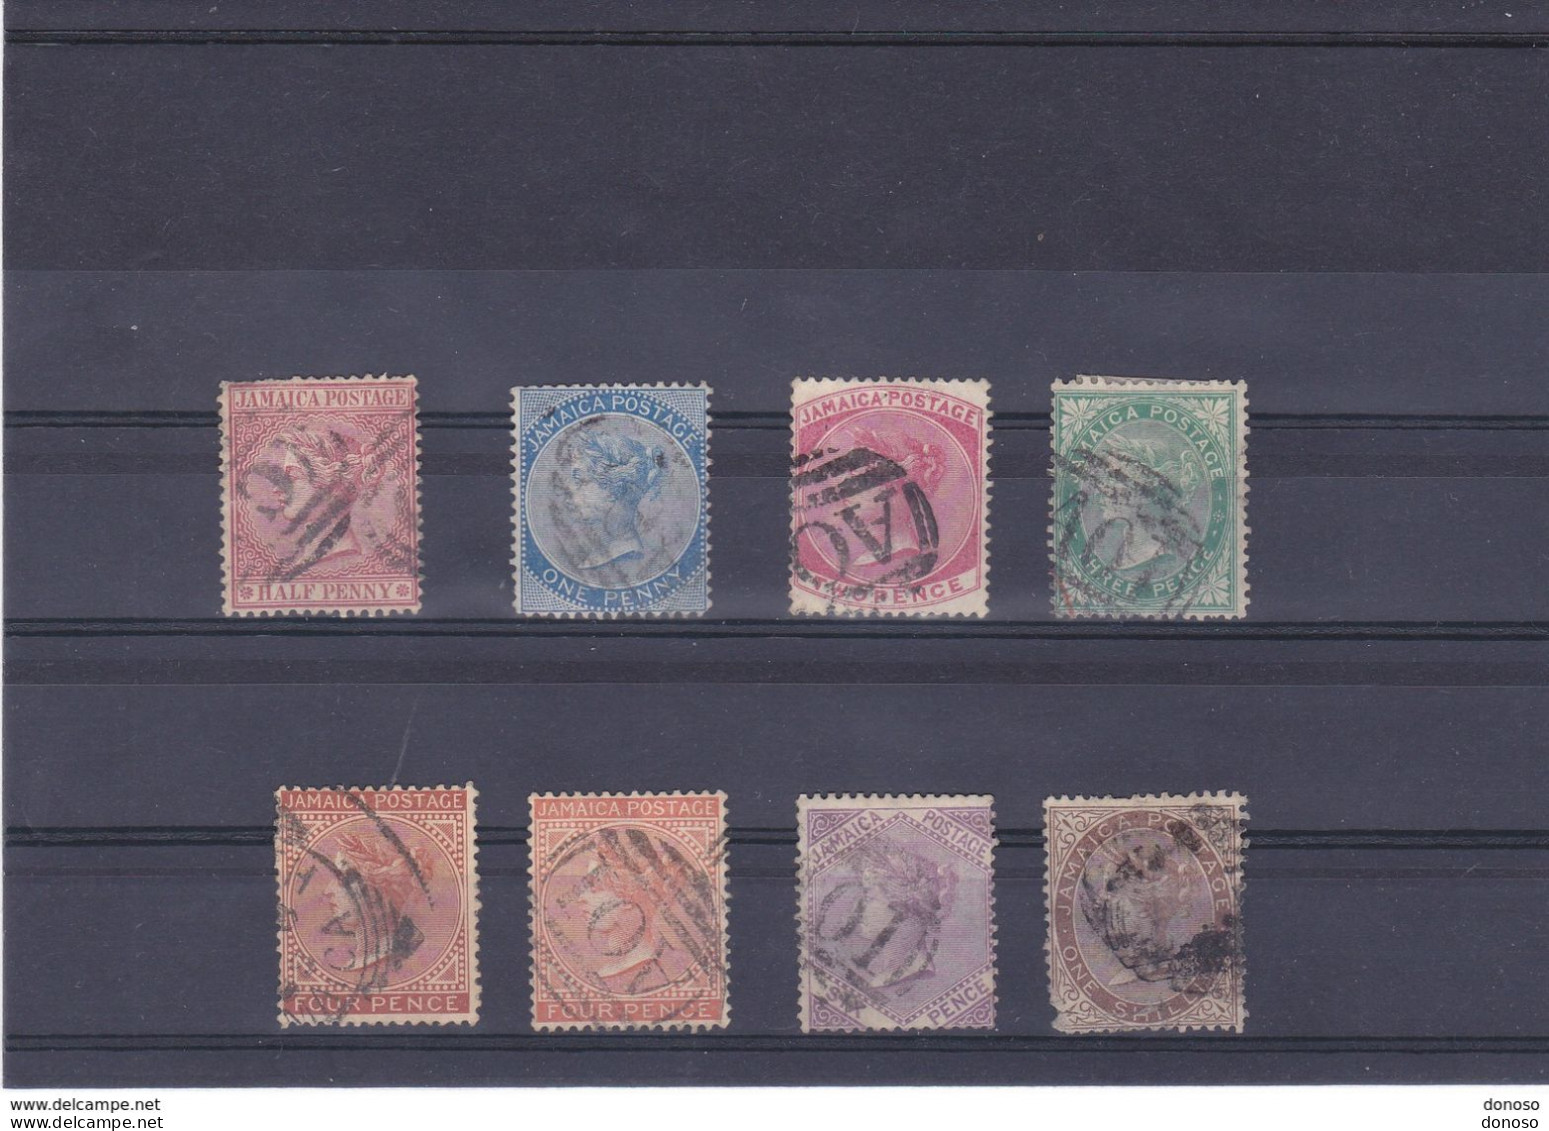 JAMAÏQUE 1870 Victoria  Yvert 7-13 Oblitéré, Cote : 62.50 Euros - Jamaica (...-1961)